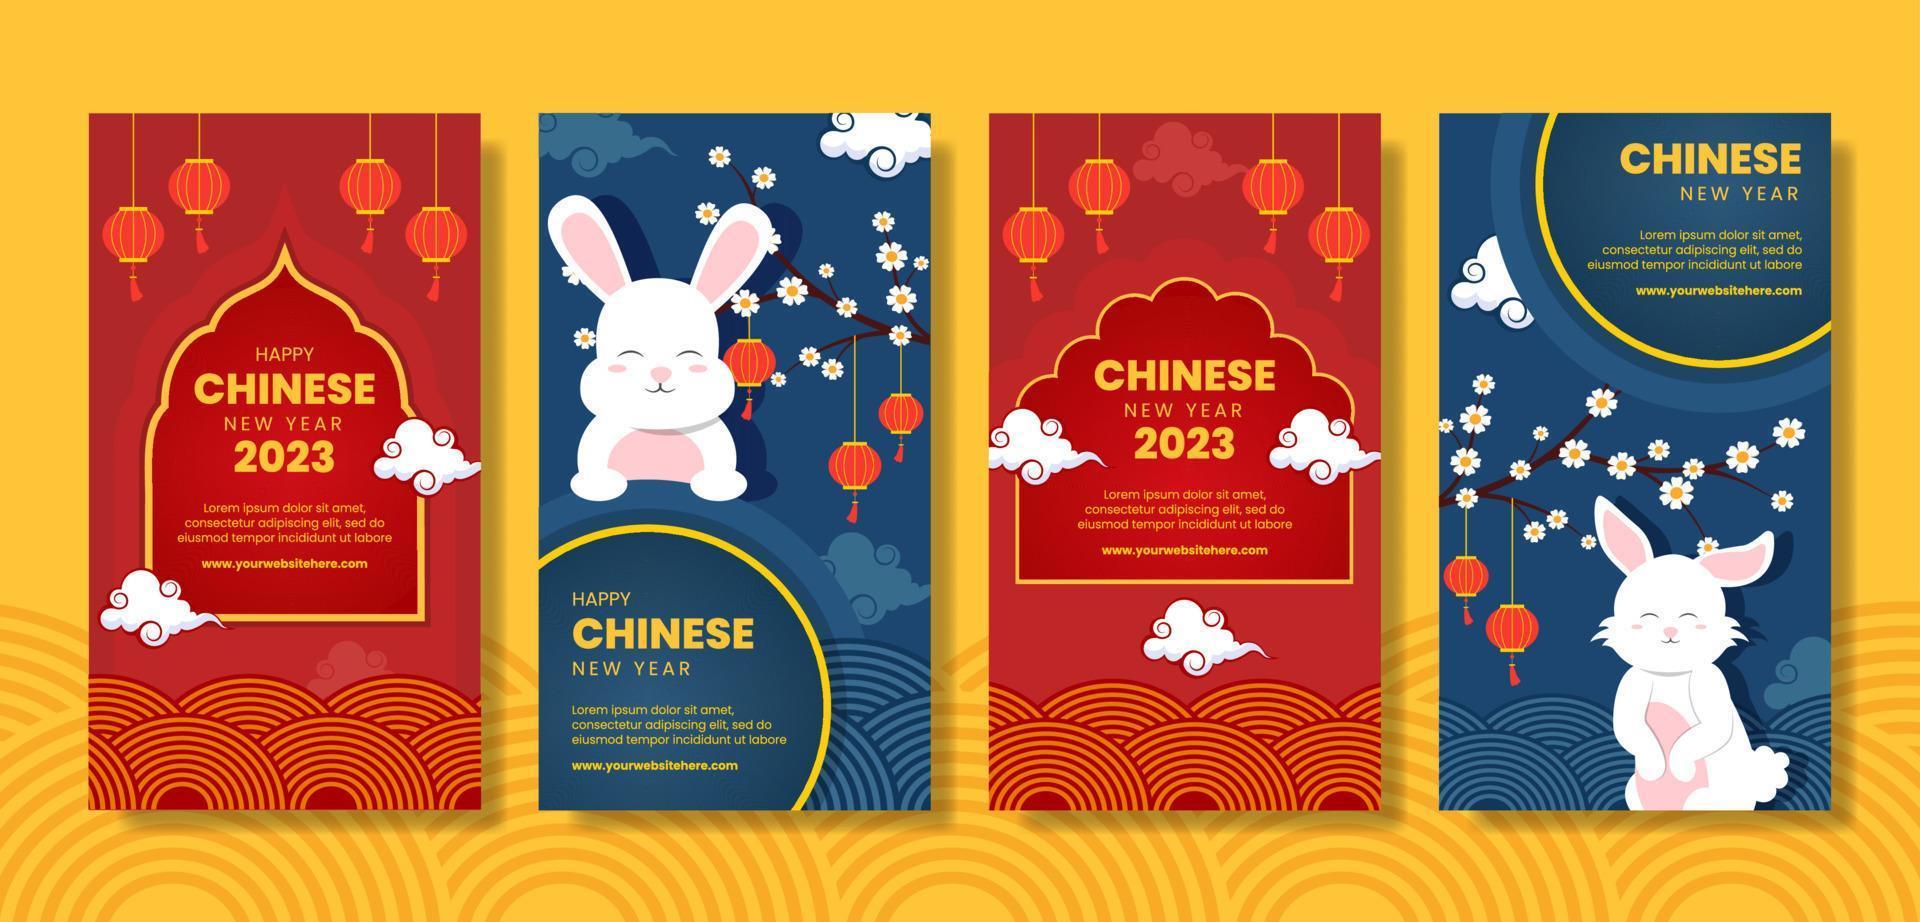 feliz año nuevo chino plantilla de historias de redes sociales dibujado a mano ilustración plana de dibujos animados vector